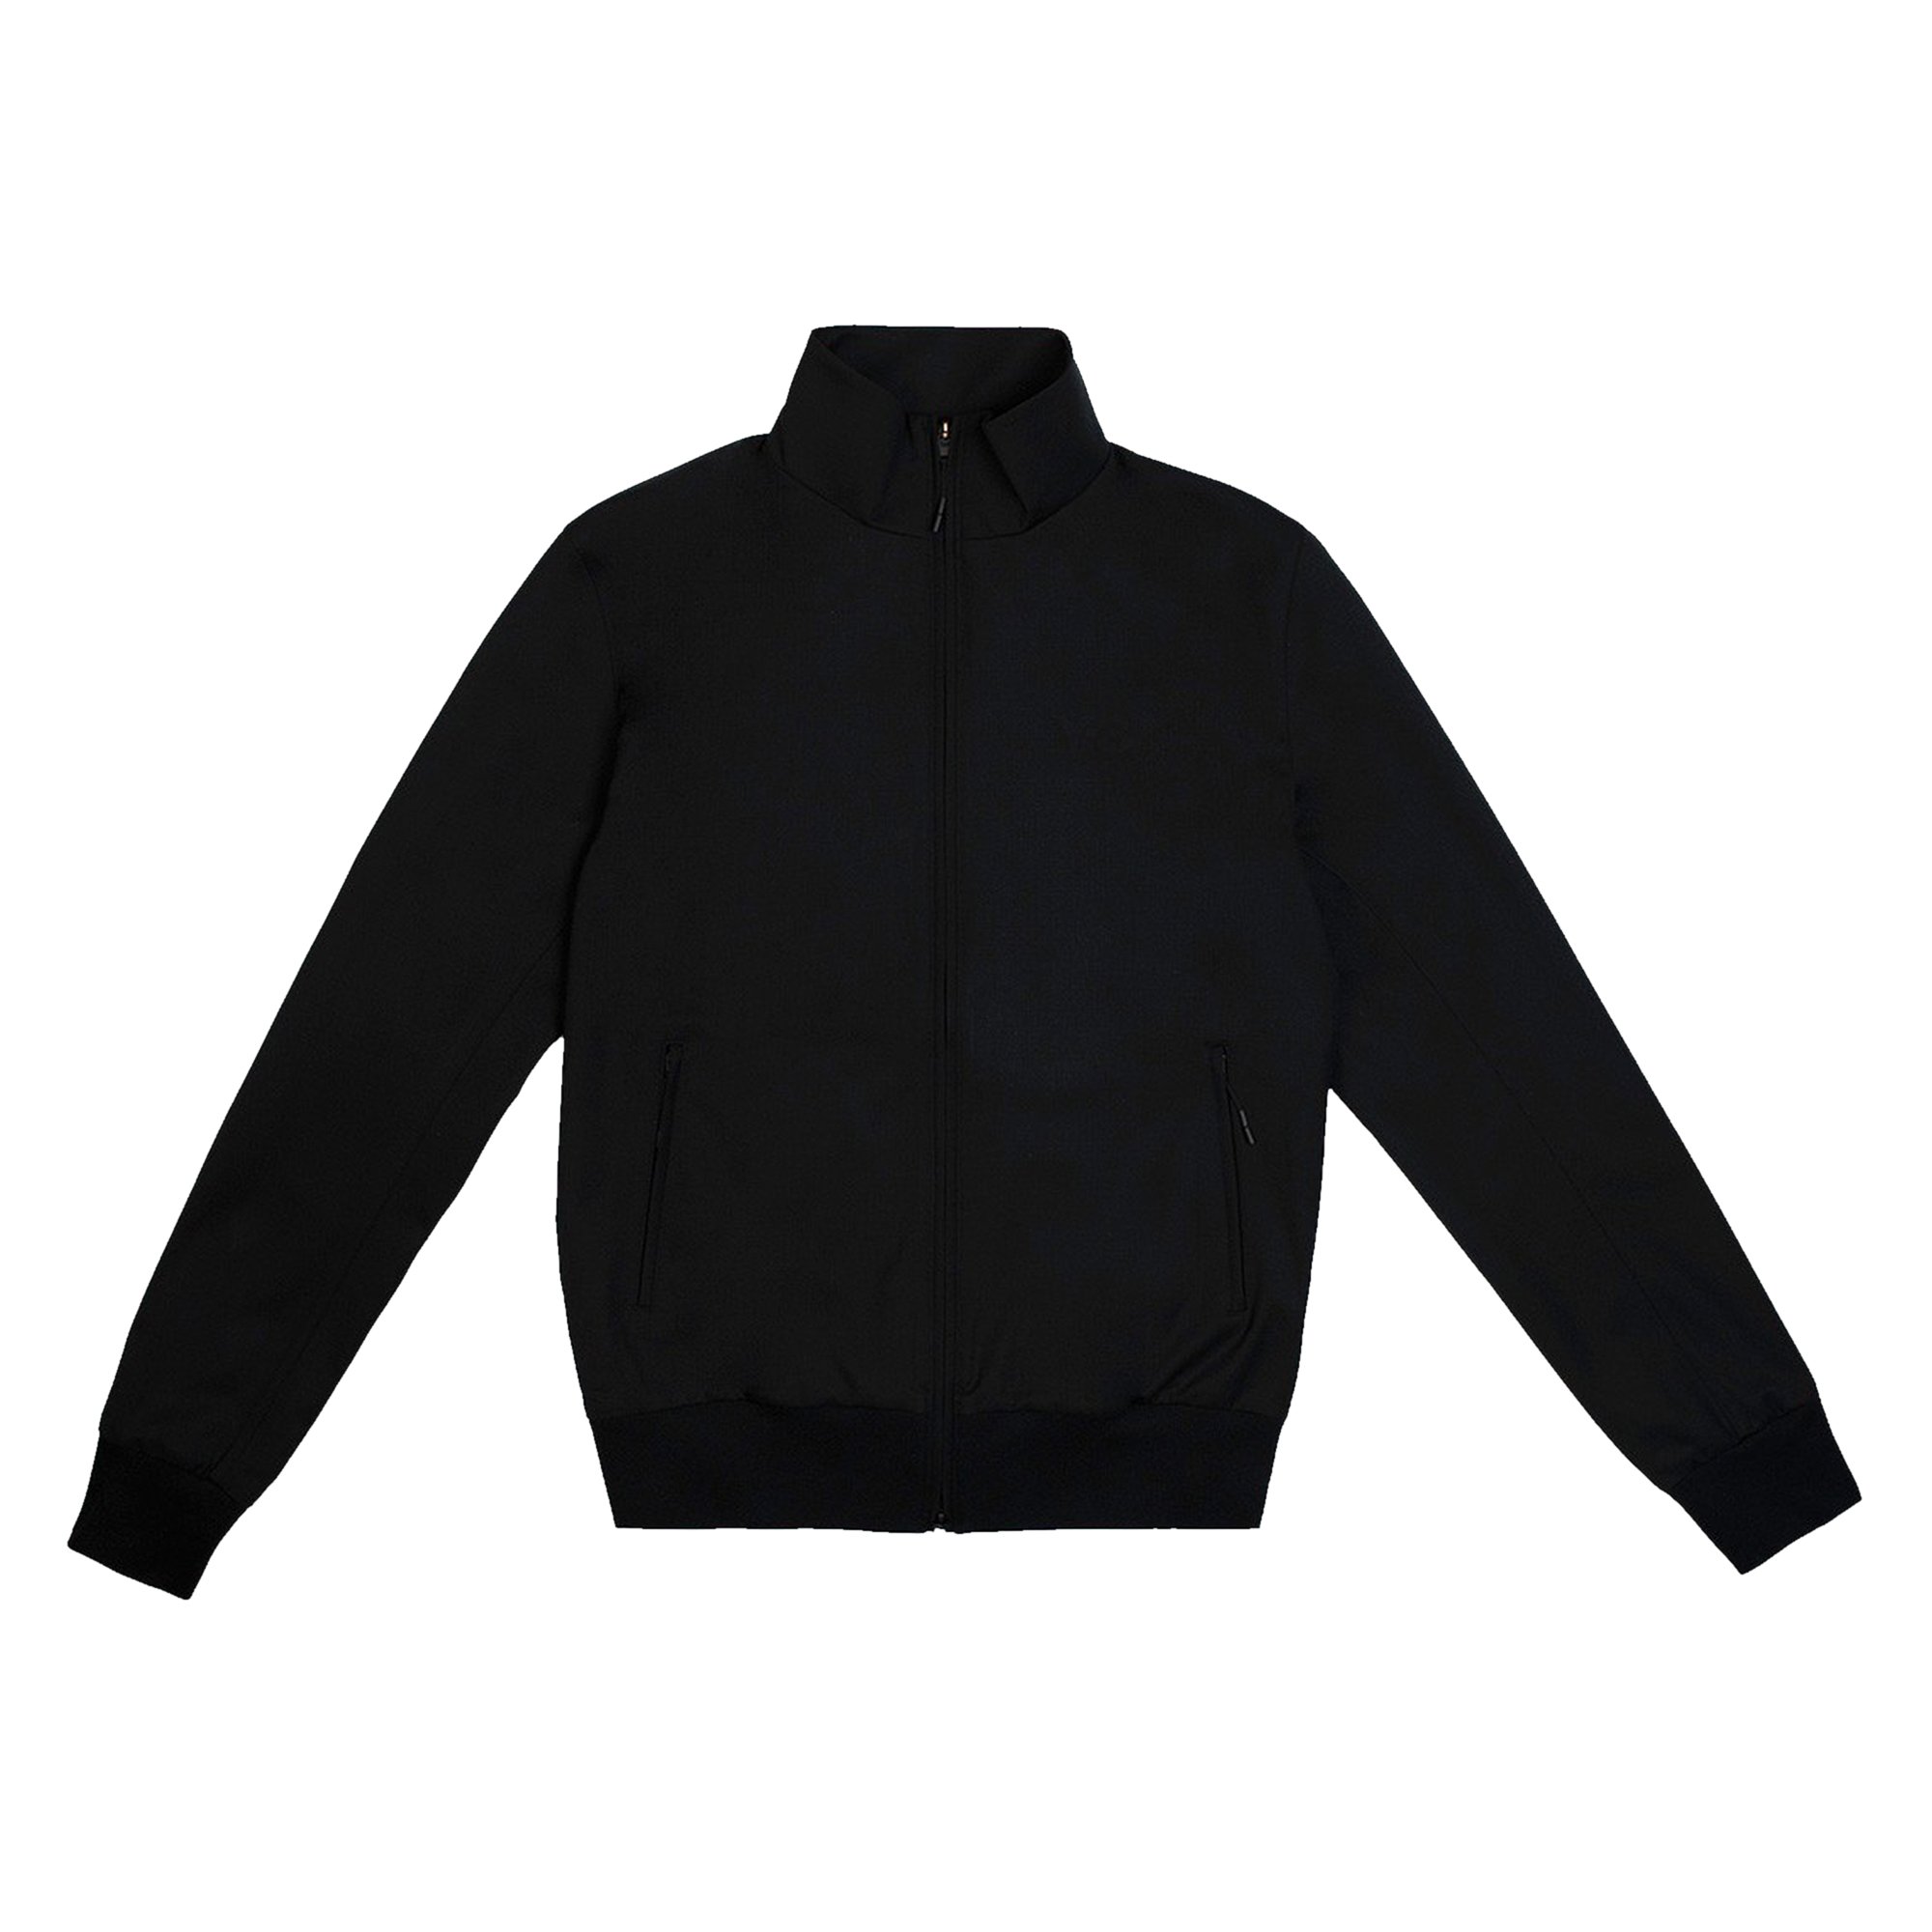 Buy Y Refined Wool Stretch Track Jacket 'Black'   FS   GOAT